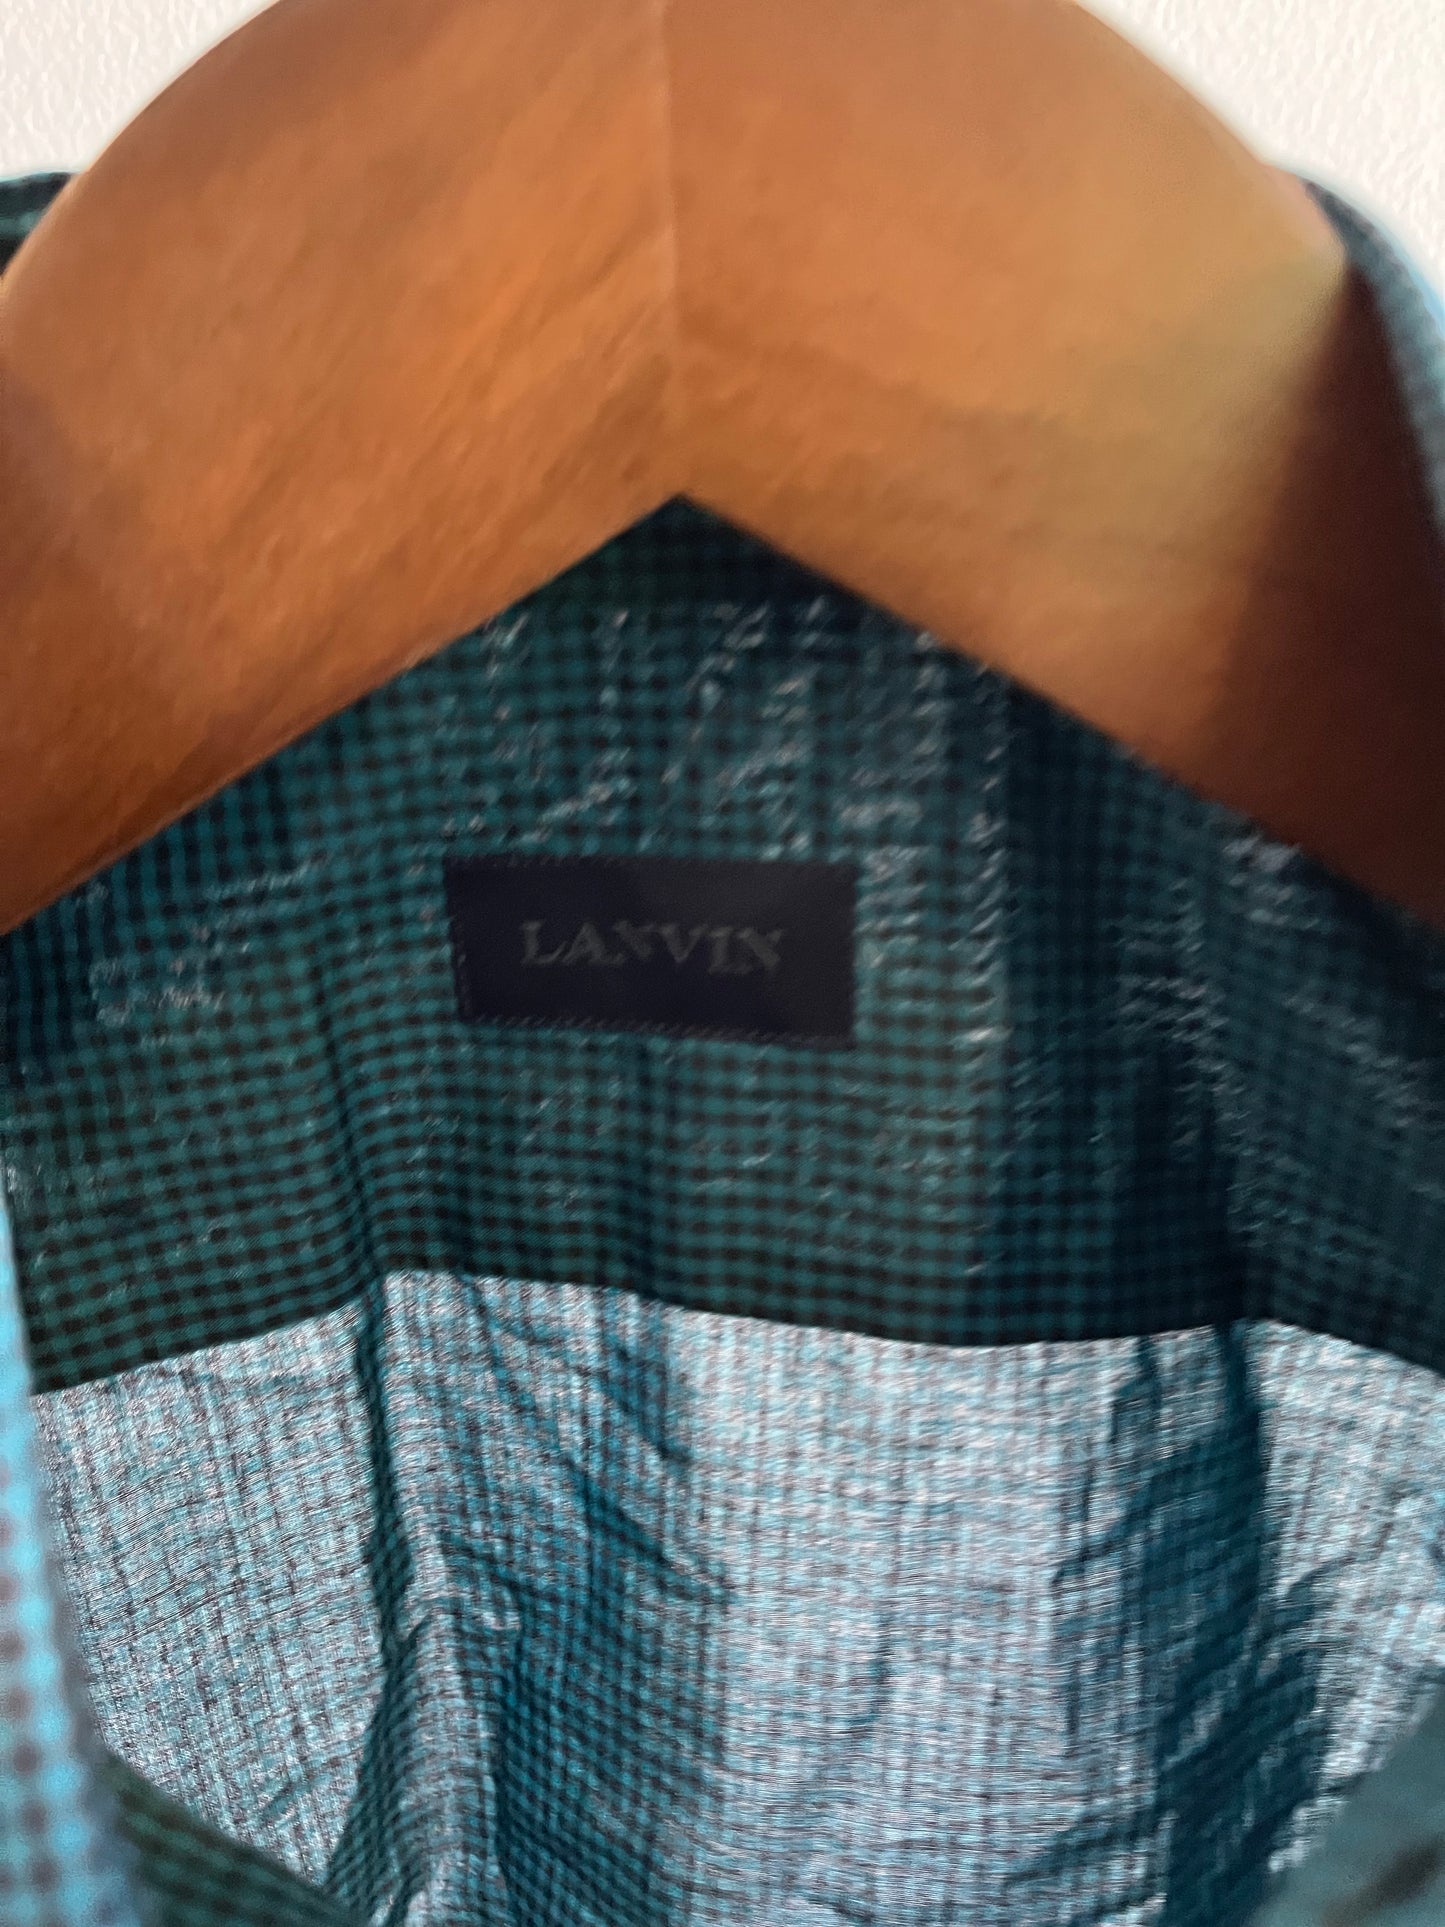 NEW GIRL: Schmidt LANVIN Green Plaid Long Sleeve Shirt